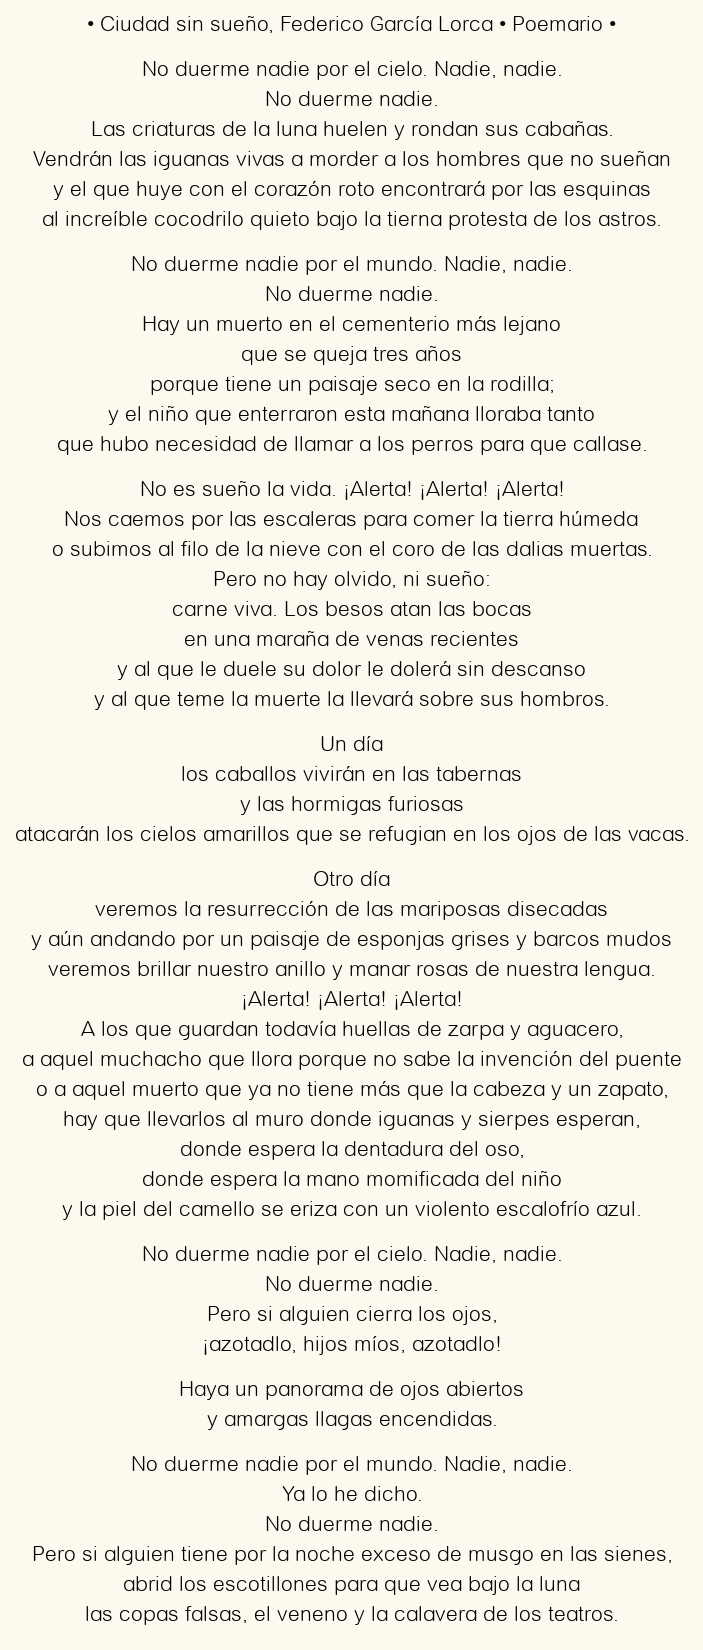 Imagen con el poema Ciudad sin sueño, por Federico García Lorca